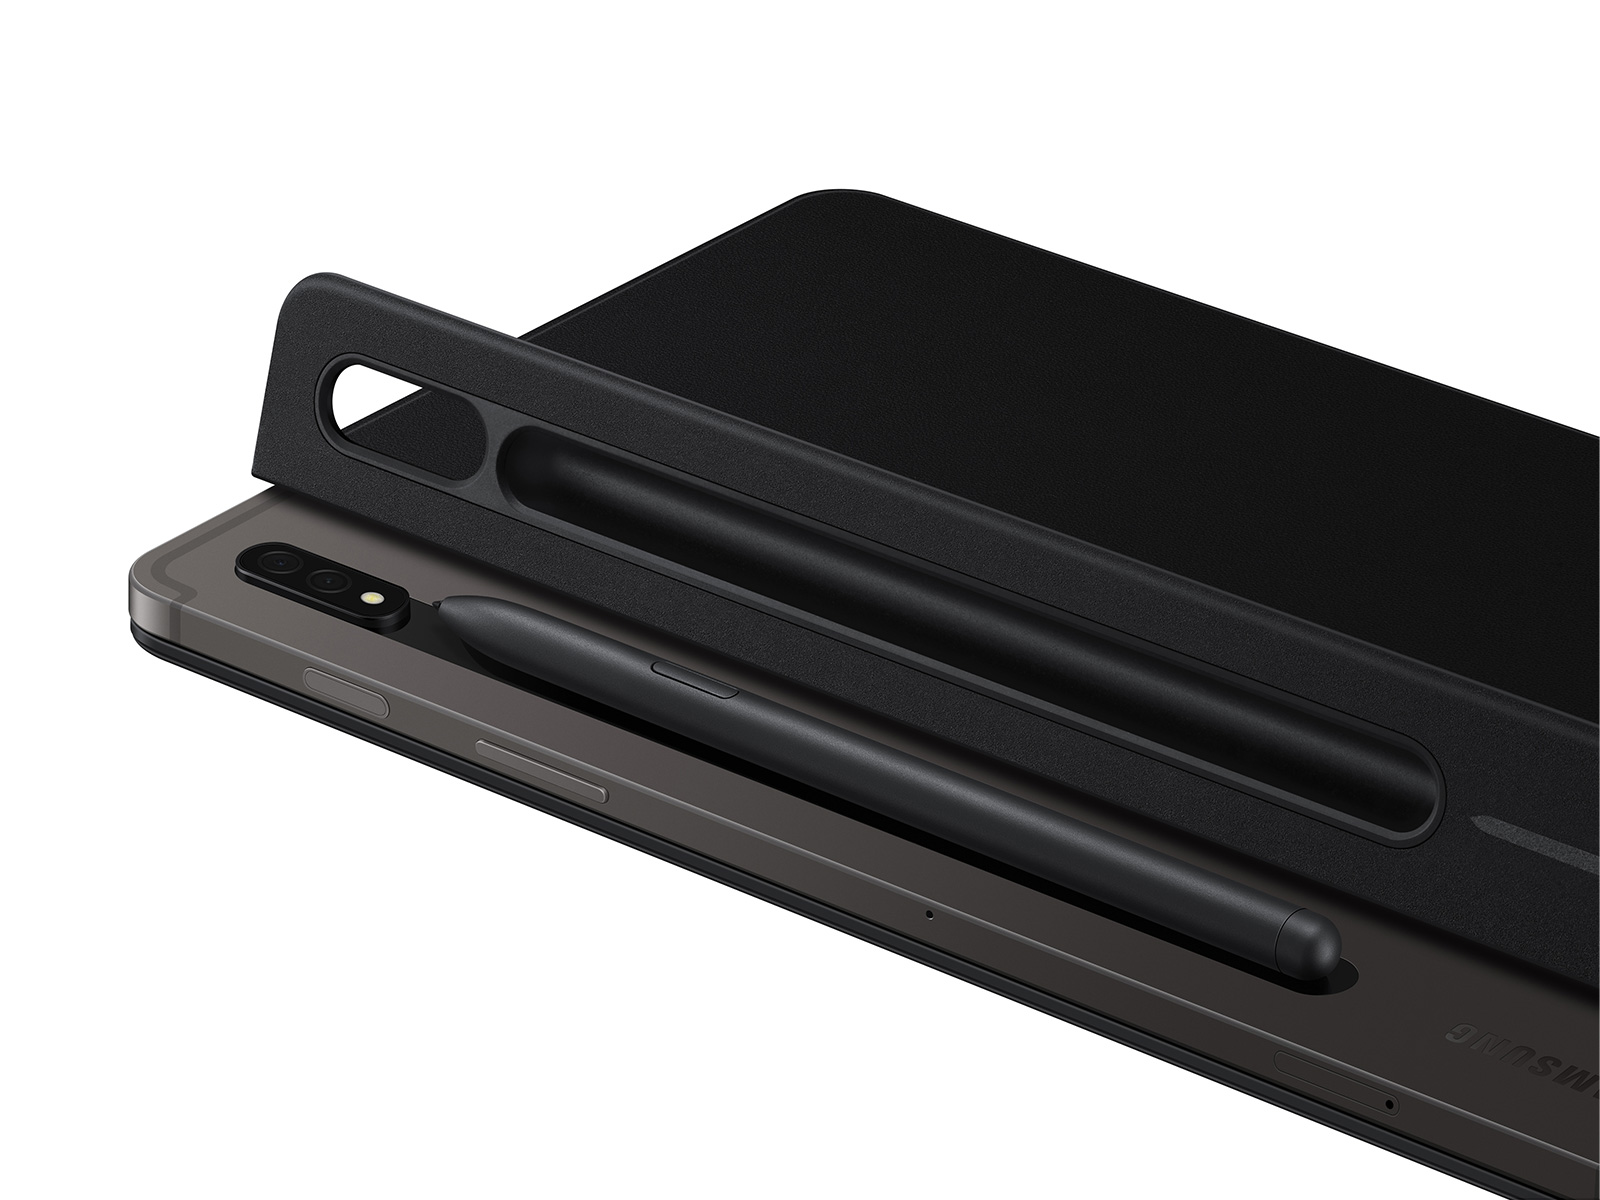 Teclado para cubierta de libro Galaxy Tab S8/S7, accesorios móviles negros - | Samsung ES